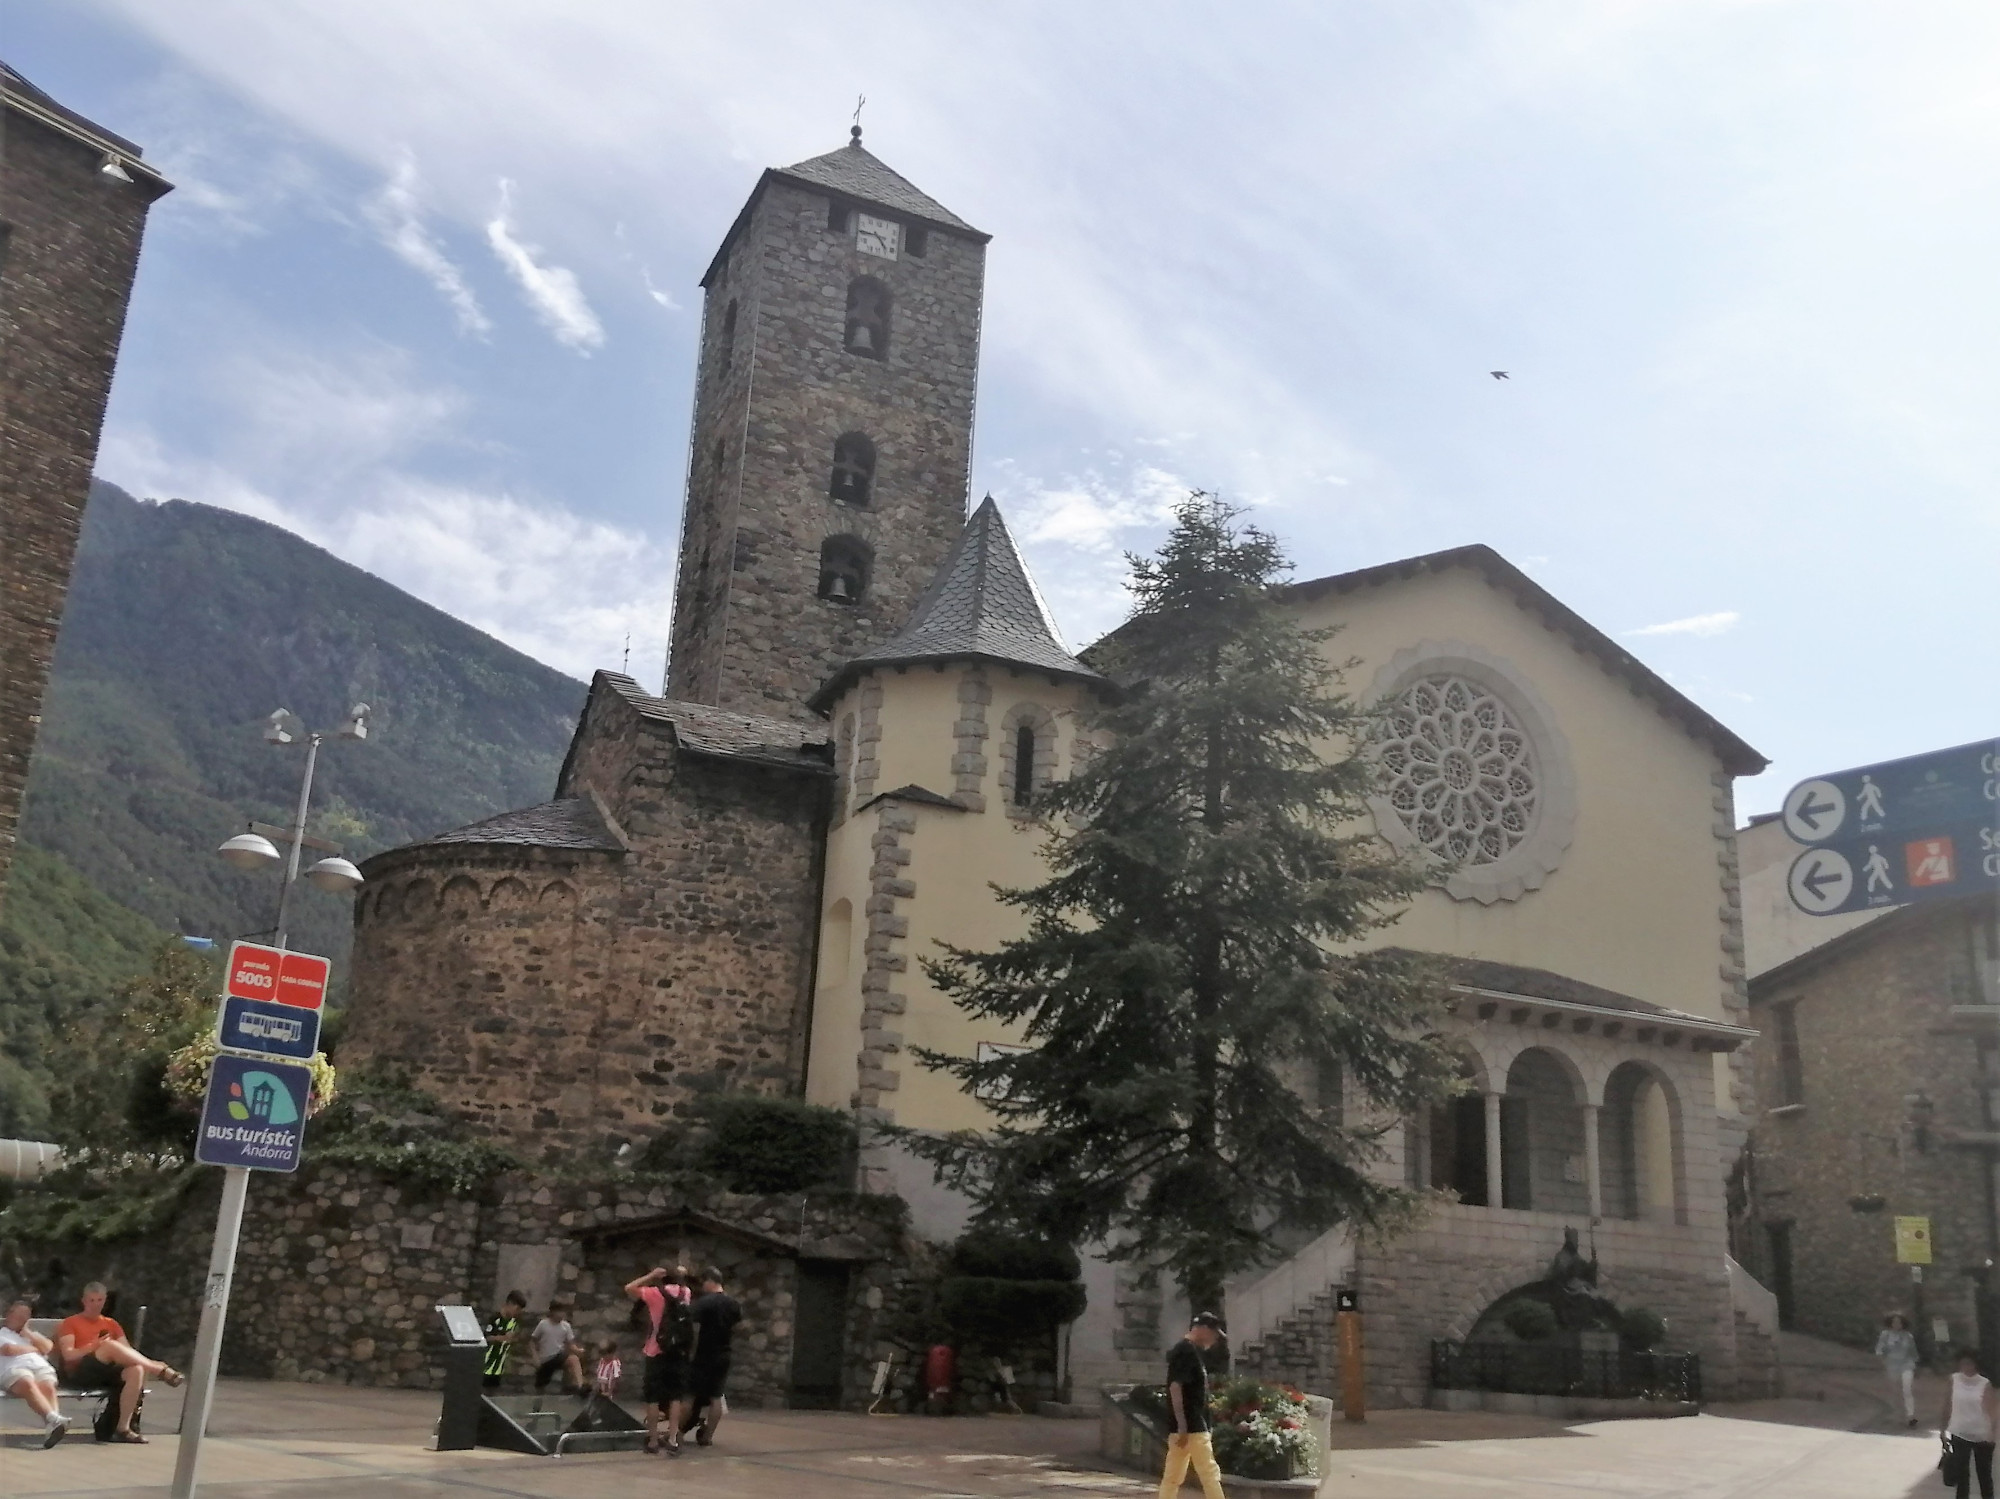 St. Esteve of Andorra Church<br/>
Catholic church